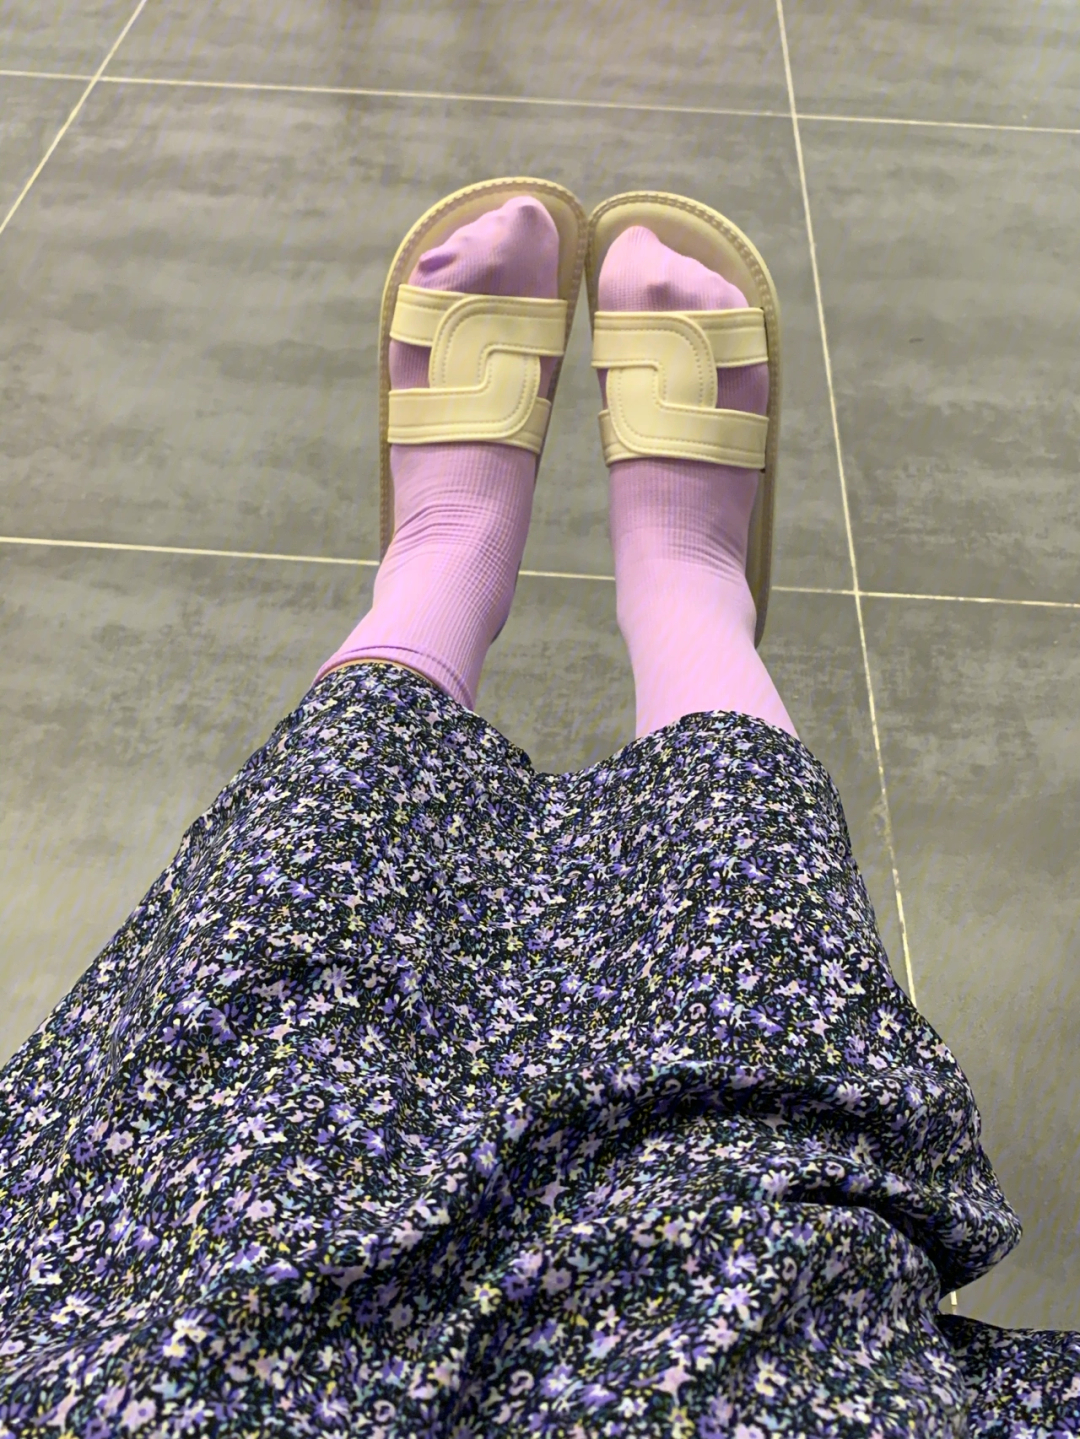 太喜欢了,夏天一定要这么穿紫色的袜子好喜欢93搭配白色的拖鞋99